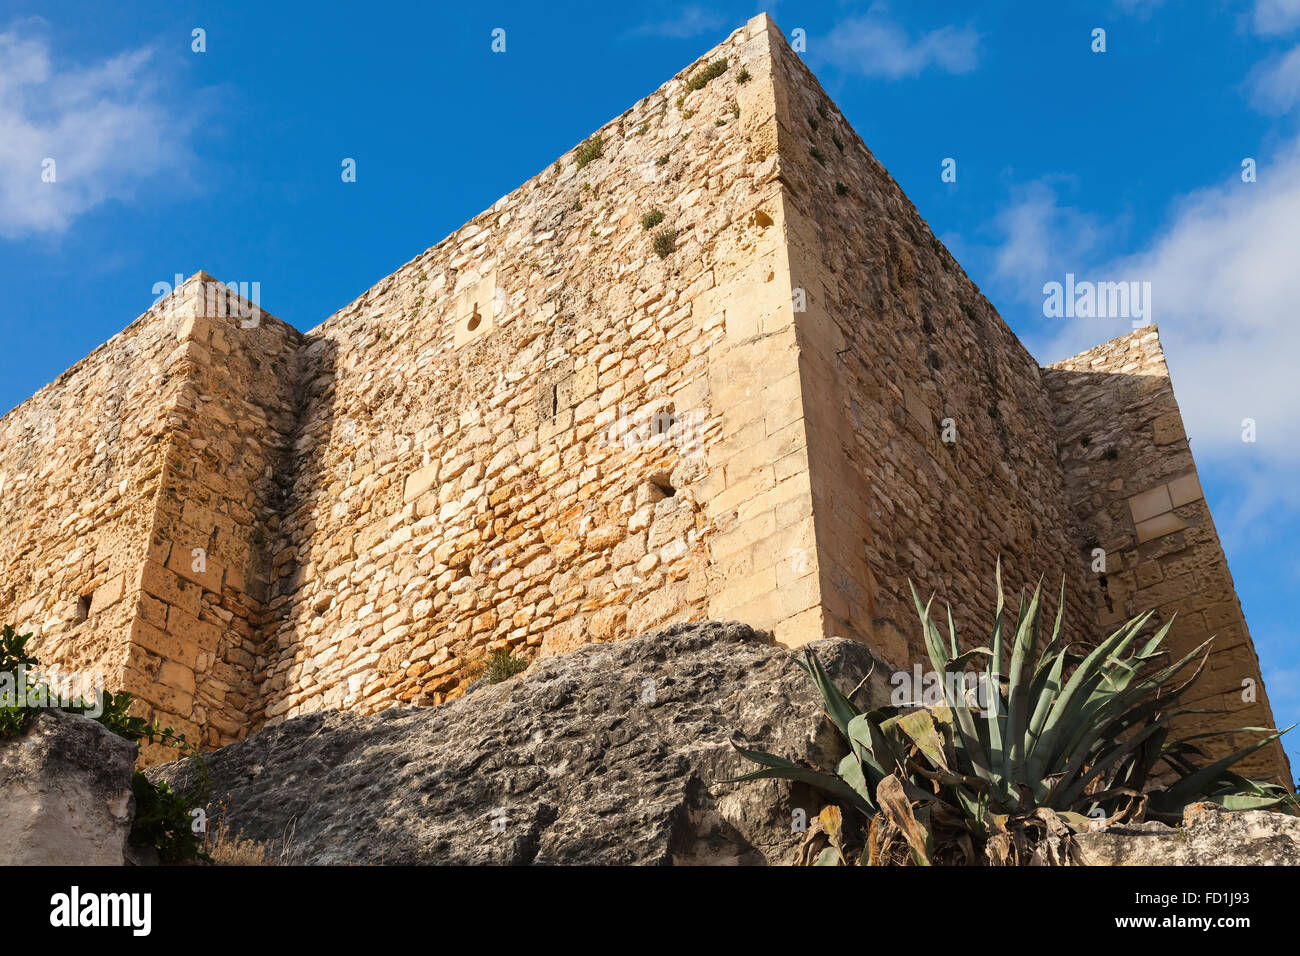 Mittelalterliche steinerne Burg auf dem Felsen. Wahrzeichen von Calafell, Spanien Stockfoto